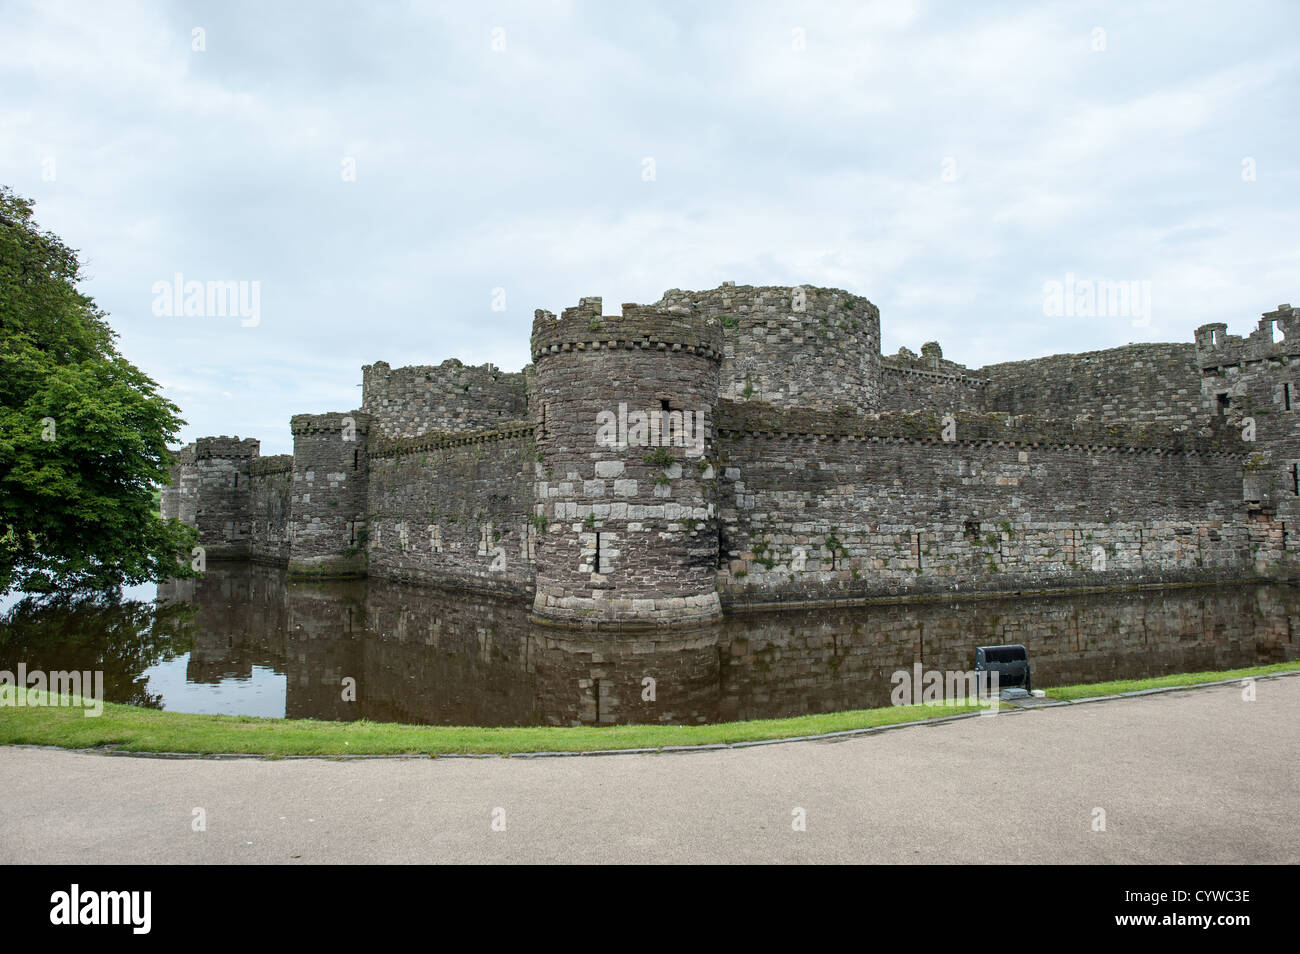 BEAUMARIS, pays de Galles - les murs du château de Beaumaris sur l'île d'Anglesey, sur la côte nord du pays de Galles, Royaume-Uni. Le château date du 13th siècle et est l'un de plusieurs commandé par Edward I. La pittoresque ville côtière de Beaumaris, située sur l'île d'Anglesey au pays de Galles, offre aux visiteurs un aperçu de la riche histoire de la région, avec son château médiéval, son architecture victorienne et son bord de mer pittoresque. Beaumaris a été classé au patrimoine mondial de l'UNESCO et continue à charmer les voyageurs avec ses monuments bien conservés et sa beauté naturelle étonnante. Banque D'Images